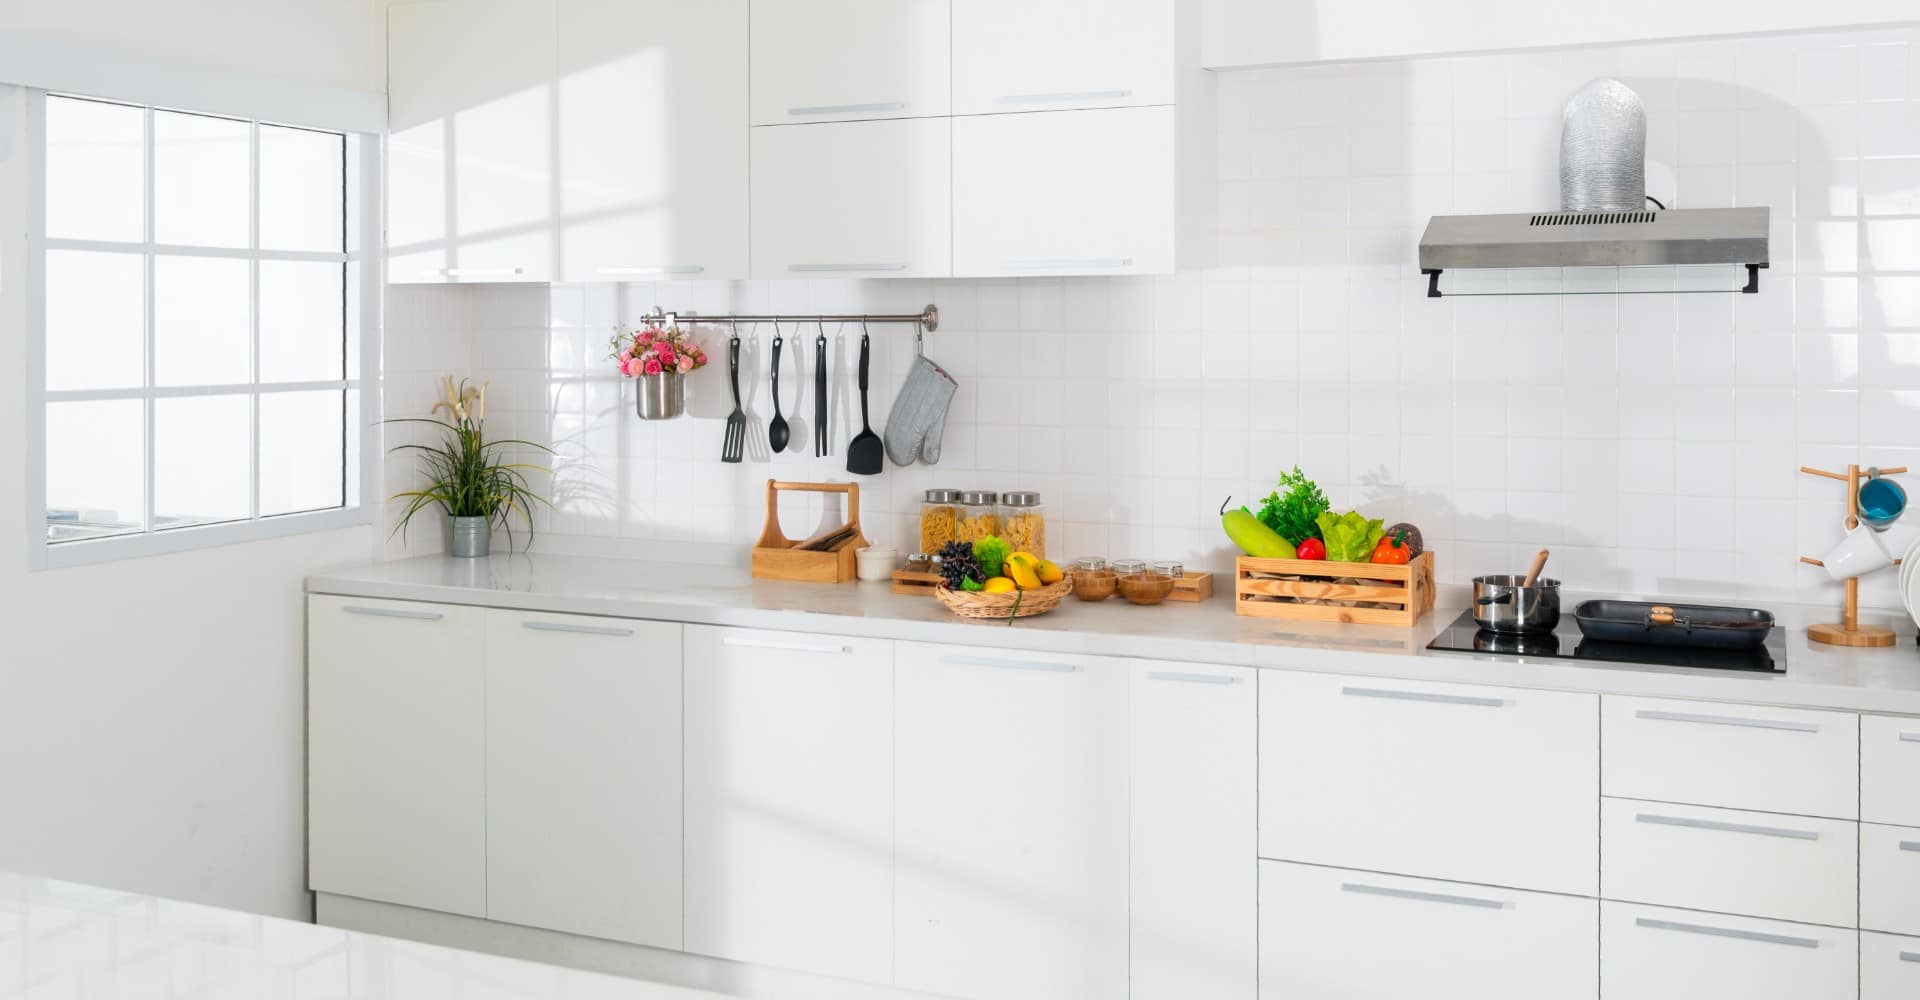 Top Minimalist Kitchen Interior Design Ideas to Try in 2020